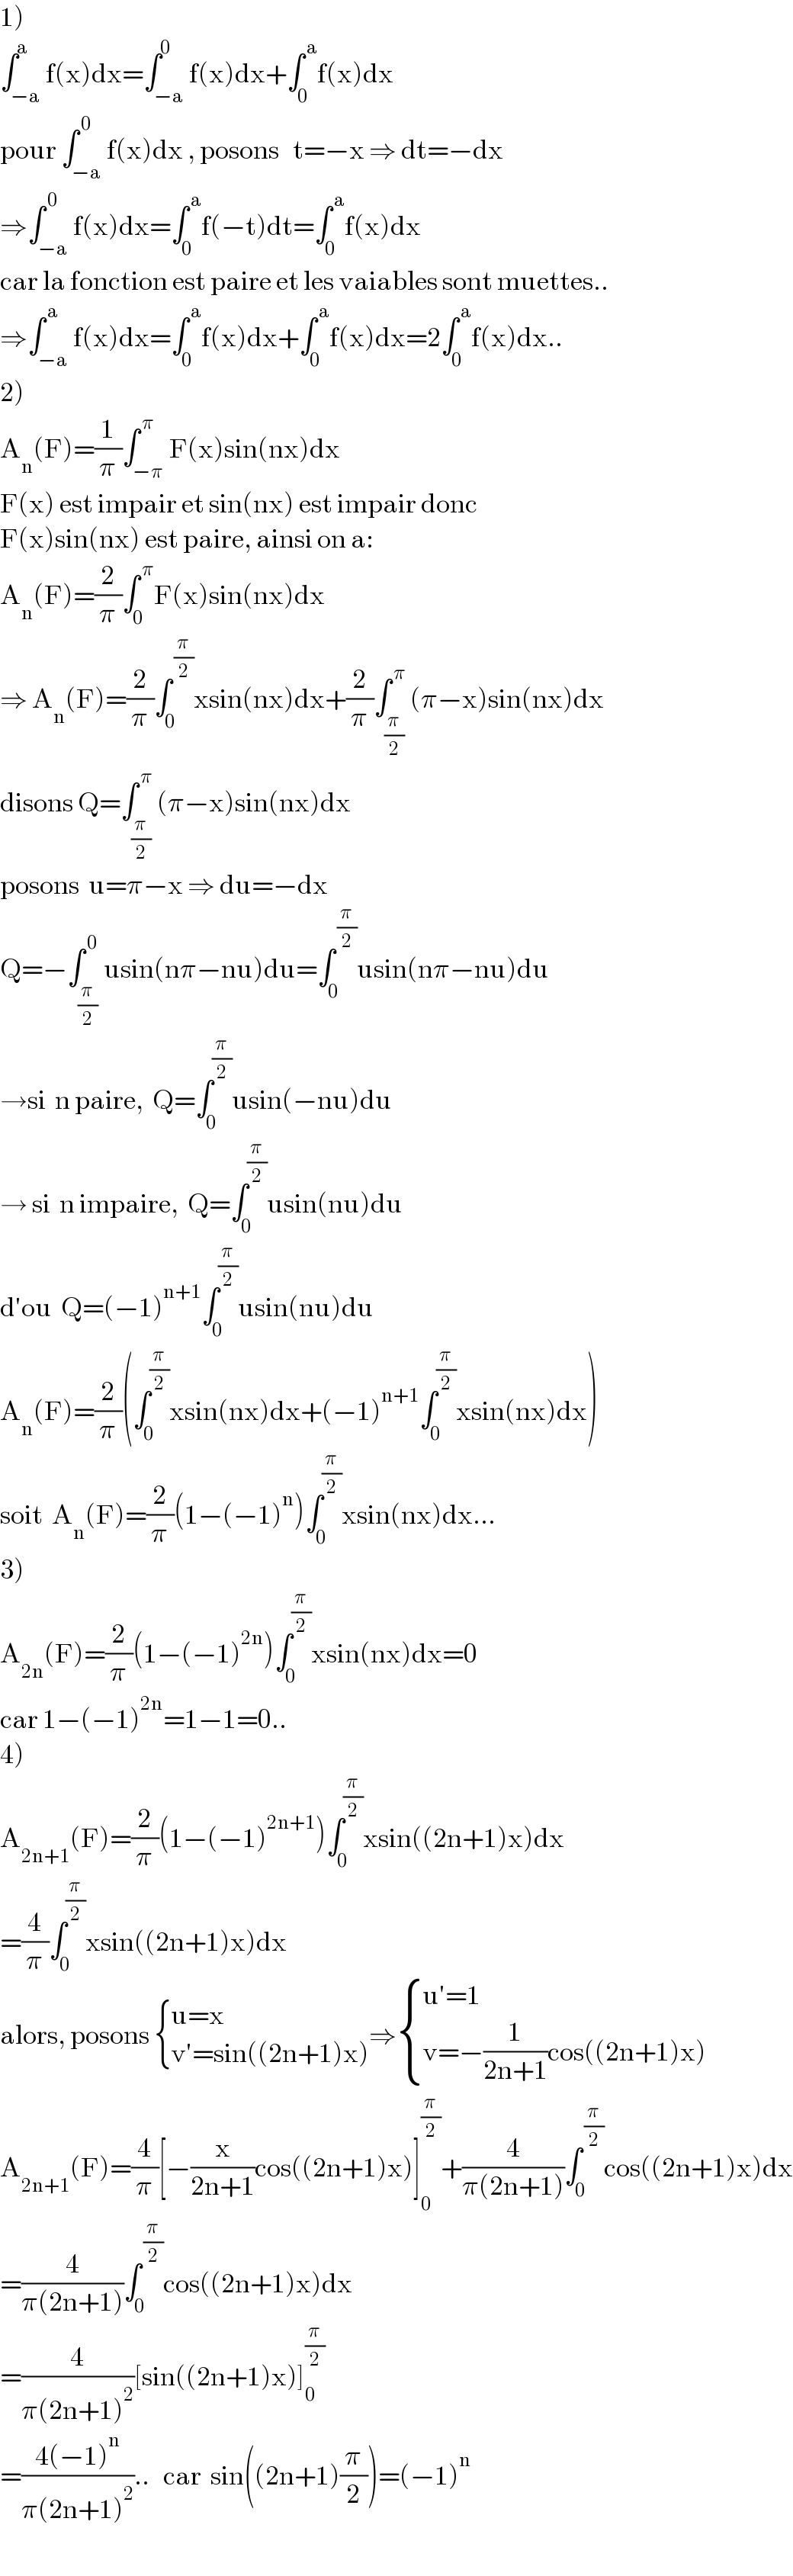 1)  ∫_(−a) ^a f(x)dx=∫_(−a) ^0 f(x)dx+∫_0 ^( a) f(x)dx  pour ∫_(−a) ^( 0) f(x)dx , posons   t=−x ⇒ dt=−dx  ⇒∫_(−a) ^( 0) f(x)dx=∫_0 ^( a) f(−t)dt=∫_0 ^( a) f(x)dx   car la fonction est paire et les vaiables sont muettes..  ⇒∫_(−a) ^( a) f(x)dx=∫_0 ^( a) f(x)dx+∫_0 ^( a) f(x)dx=2∫_0 ^( a) f(x)dx..  2)  A_n (F)=(1/π)∫_(−π) ^( π) F(x)sin(nx)dx  F(x) est impair et sin(nx) est impair donc   F(x)sin(nx) est paire, ainsi on a:  A_n (F)=(2/π)∫_0 ^( π) F(x)sin(nx)dx  ⇒ A_n (F)=(2/π)∫_0 ^( (π/2)) xsin(nx)dx+(2/π)∫_(π/2) ^( π) (π−x)sin(nx)dx  disons Q=∫_(π/2) ^( π) (π−x)sin(nx)dx  posons  u=π−x ⇒ du=−dx  Q=−∫_(π/2) ^( 0) usin(nπ−nu)du=∫_0 ^( (π/2)) usin(nπ−nu)du  →si  n paire,  Q=∫_0 ^(π/2) usin(−nu)du  → si  n impaire,  Q=∫_0 ^(π/2) usin(nu)du  d′ou  Q=(−1)^(n+1) ∫_0 ^(π/2) usin(nu)du  A_n (F)=(2/π)(∫_0 ^(π/2) xsin(nx)dx+(−1)^(n+1) ∫_0 ^(π/2) xsin(nx)dx)  soit  A_n (F)=(2/π)(1−(−1)^n )∫_0 ^(π/2) xsin(nx)dx...  3)  A_(2n) (F)=(2/π)(1−(−1)^(2n) )∫_0 ^(π/2) xsin(nx)dx=0  car 1−(−1)^(2n) =1−1=0..  4)  A_(2n+1) (F)=(2/π)(1−(−1)^(2n+1) )∫_0 ^(π/2) xsin((2n+1)x)dx  =(4/π)∫_0 ^(π/2) xsin((2n+1)x)dx  alors, posons  { ((u=x)),((v′=sin((2n+1)x))) :}⇒ { ((u′=1)),((v=−(1/(2n+1))cos((2n+1)x))) :}  A_(2n+1) (F)=(4/π)[−(x/(2n+1))cos((2n+1)x)]_0 ^(π/2) +(4/(π(2n+1)))∫_0 ^( (π/2)) cos((2n+1)x)dx  =(4/(π(2n+1)))∫_0 ^( (π/2)) cos((2n+1)x)dx  =(4/(π(2n+1)^2 ))[sin((2n+1)x)]_0 ^(π/2)   =((4(−1)^n )/(π(2n+1)^2 ))..   car  sin((2n+1)(π/2))=(−1)^n   